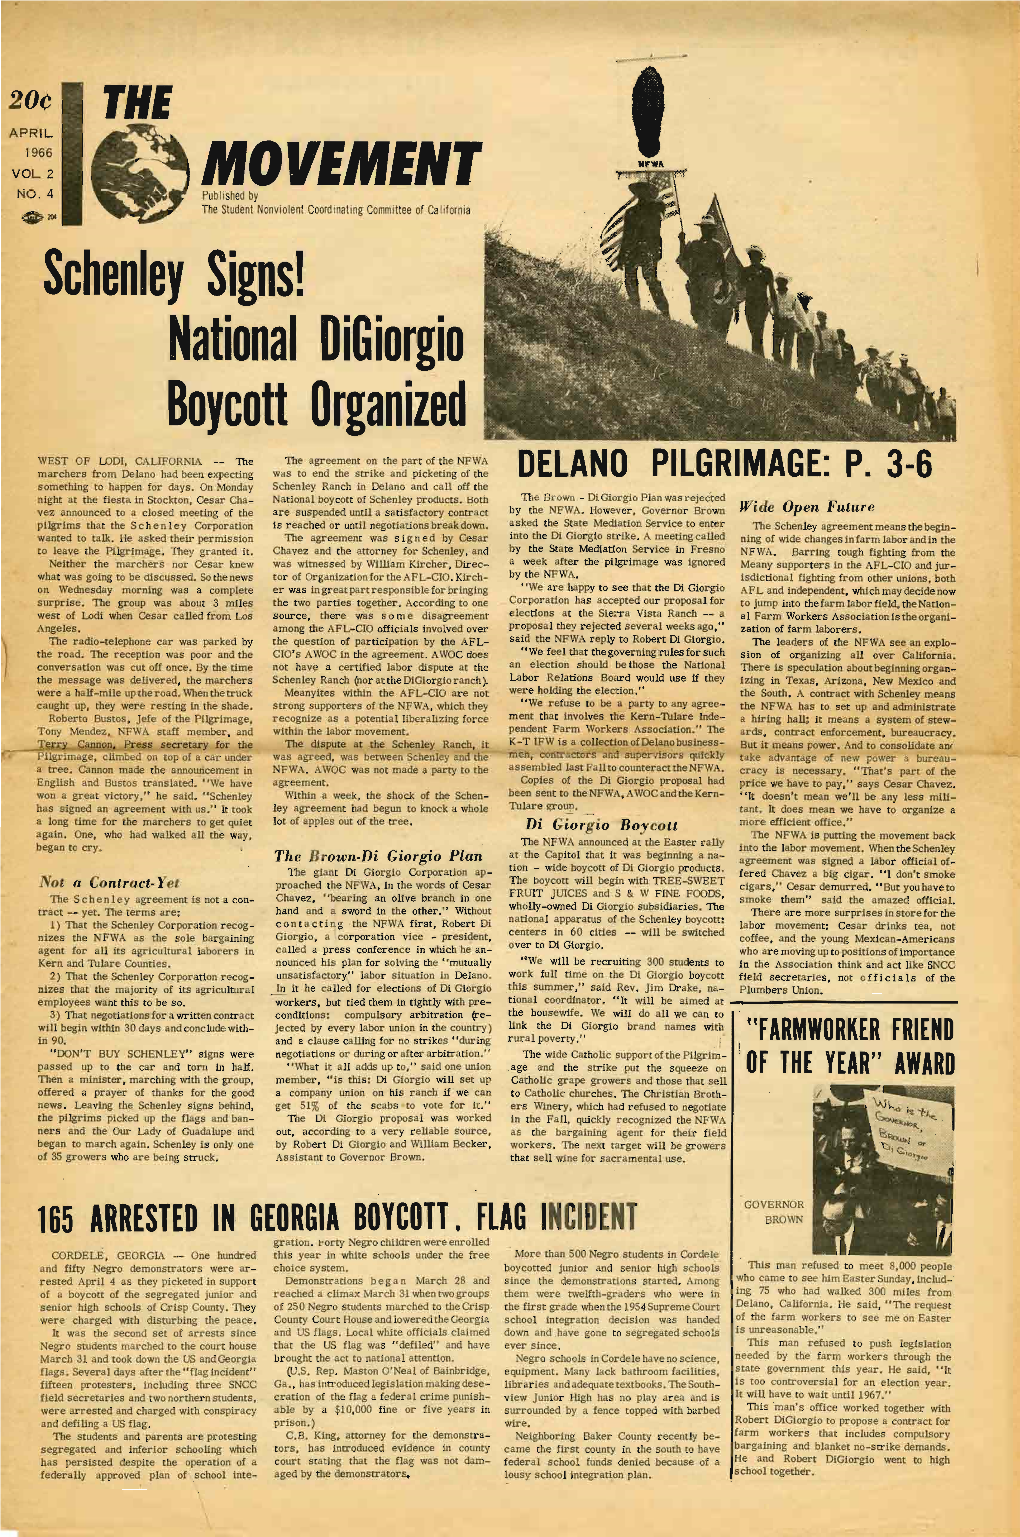 The Movement, April 1966. Vol. 2 No. 4